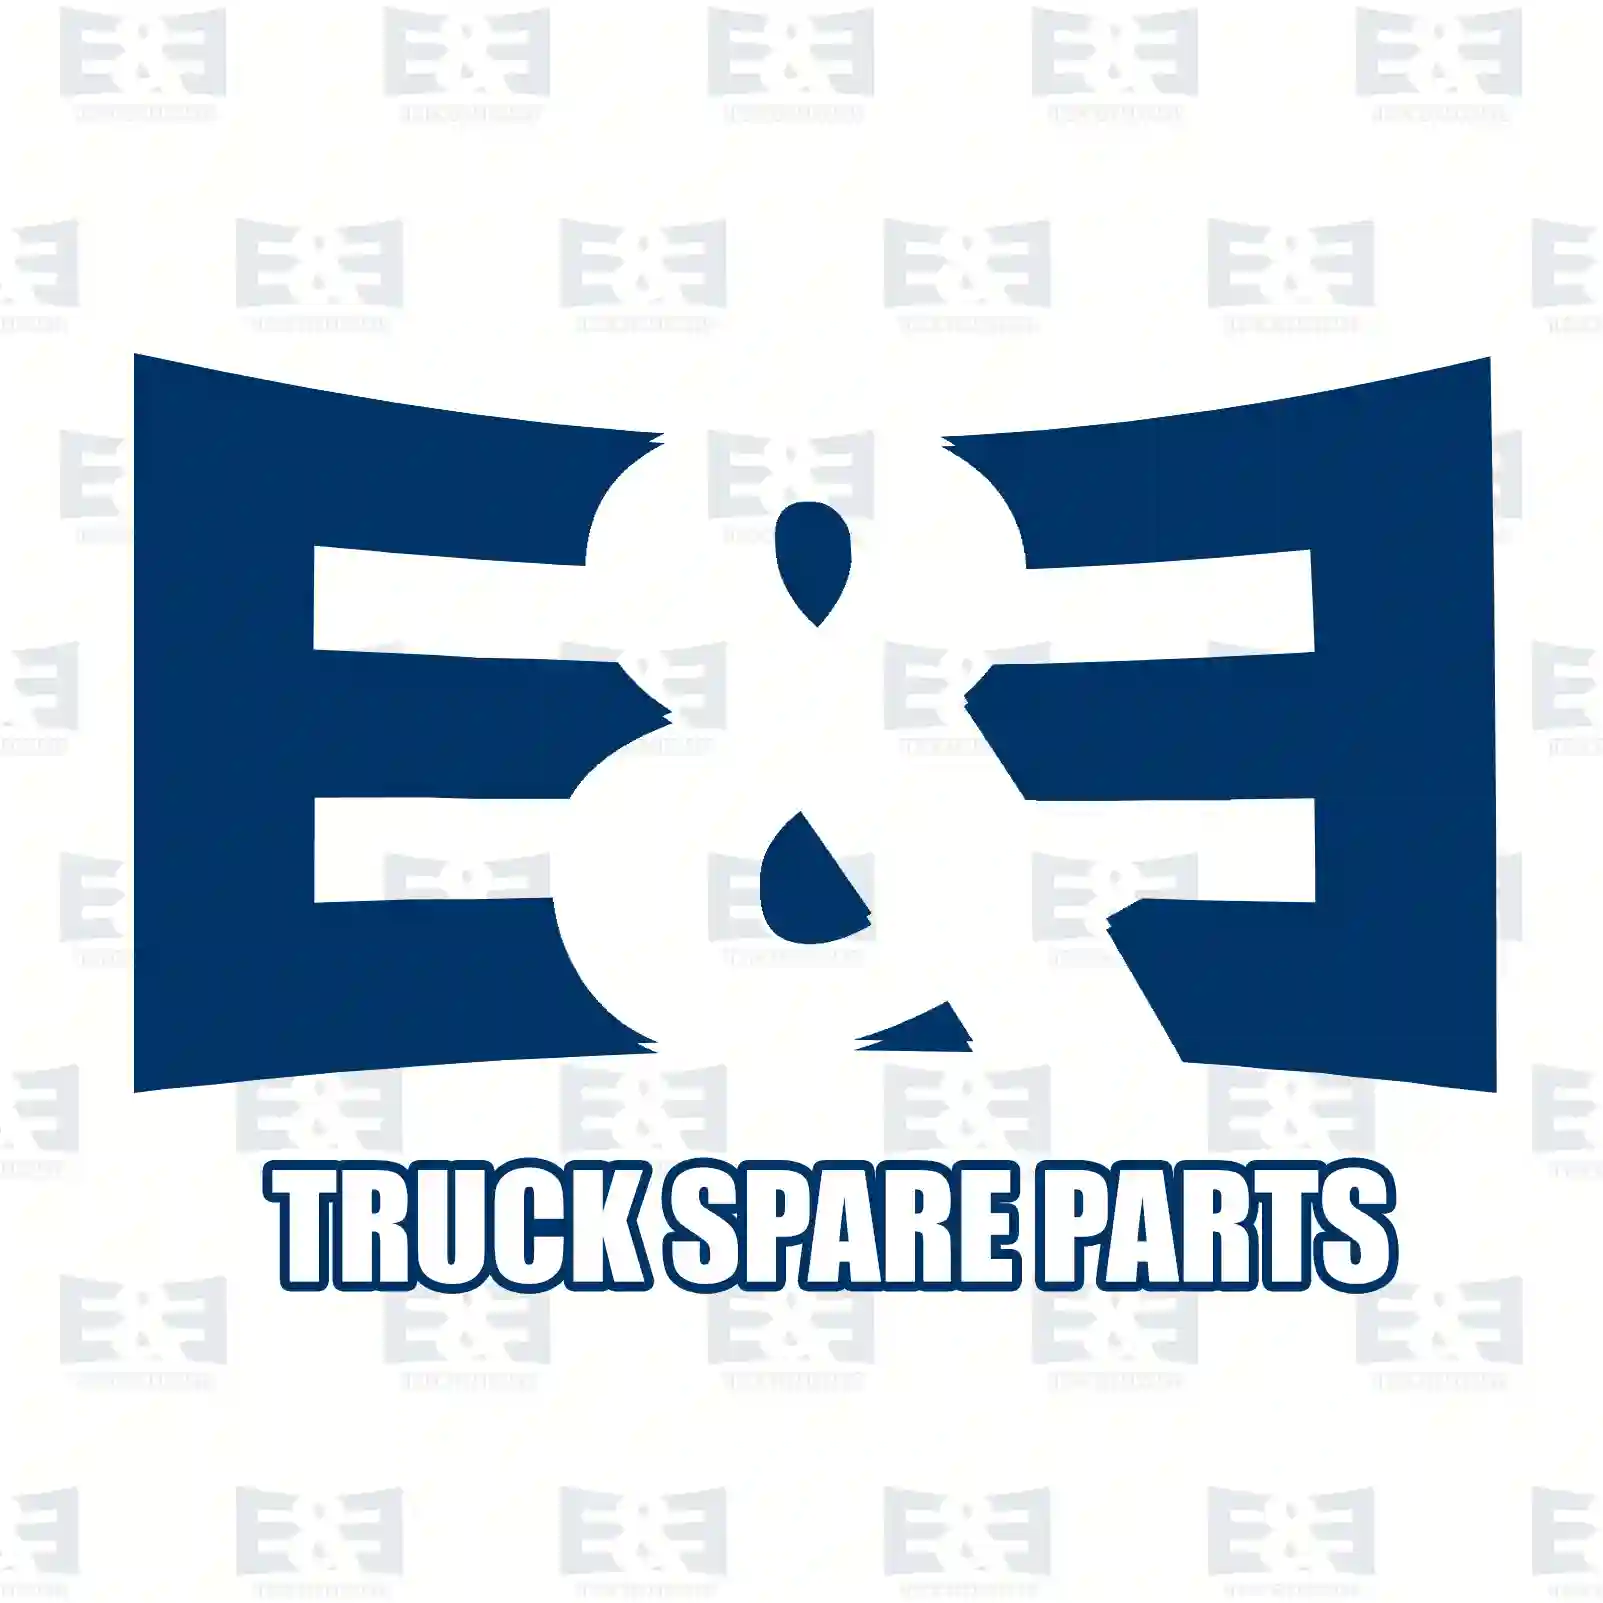 Compressor, 2E2296746, 51541007246 ||  2E2296746 E&E Truck Spare Parts | Truck Spare Parts, Auotomotive Spare Parts Compressor, 2E2296746, 51541007246 ||  2E2296746 E&E Truck Spare Parts | Truck Spare Parts, Auotomotive Spare Parts